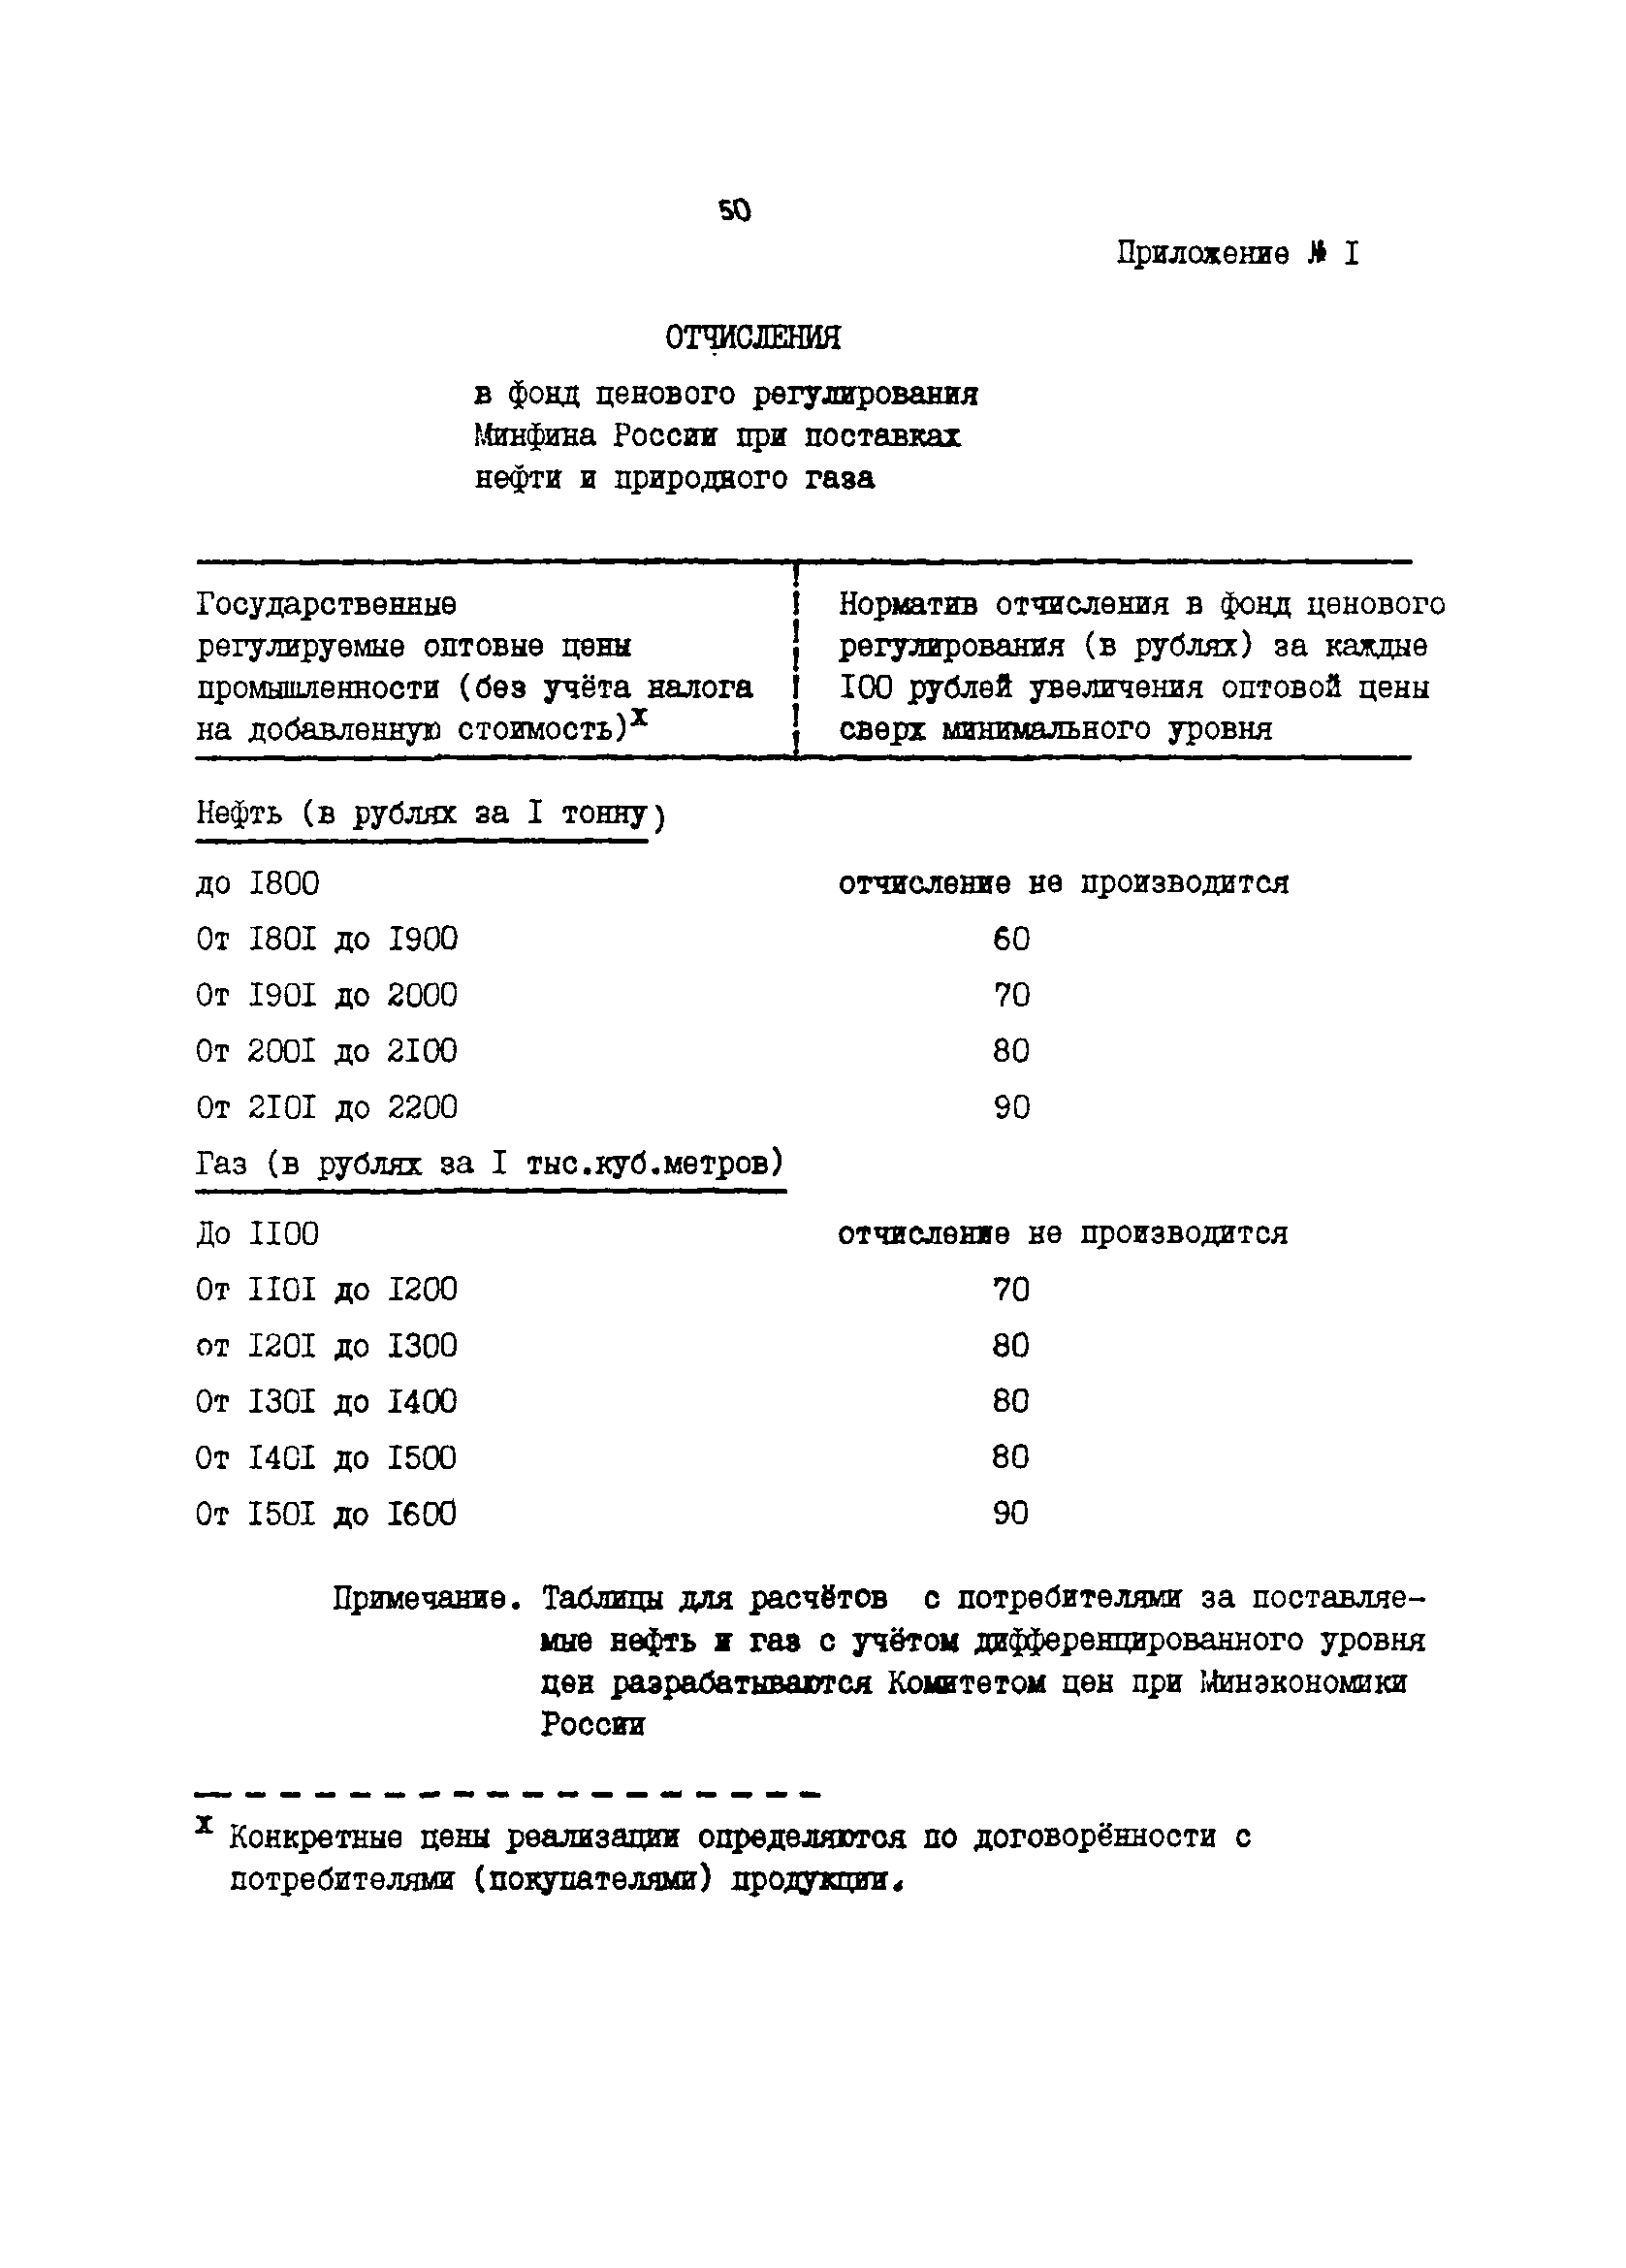 Методические указания 6-92